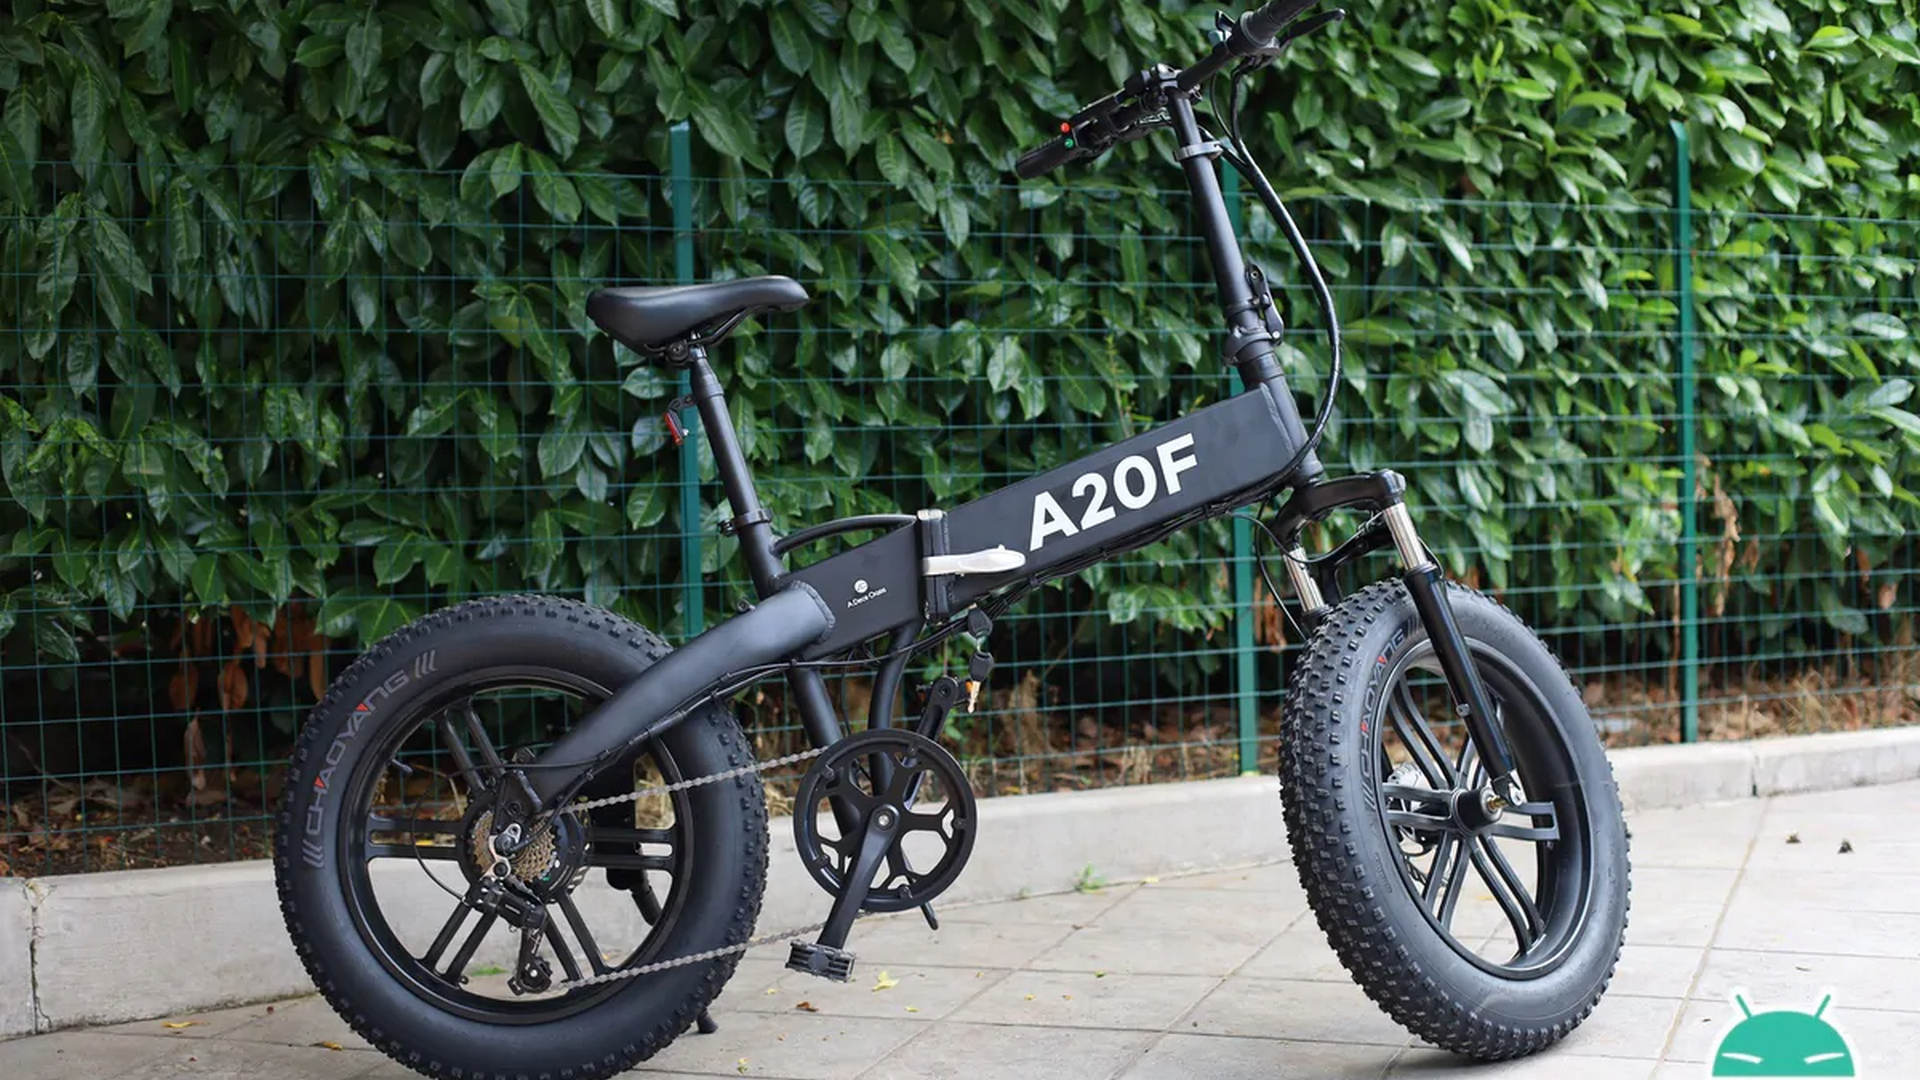 codice sconto ado a20f offerta fat bike elettrica